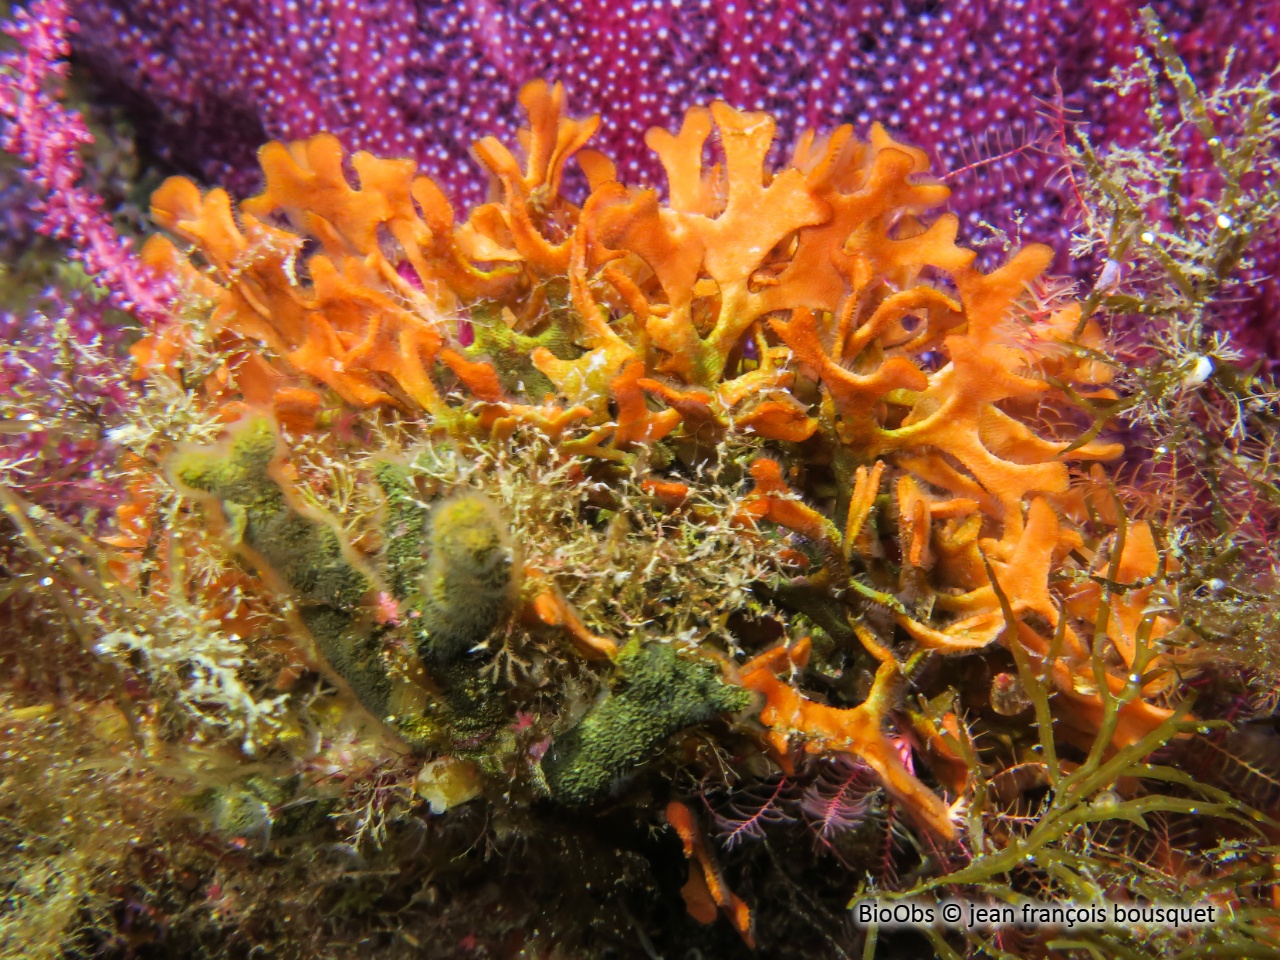 Rose de mer Méditerranéenne - Pentapora fascialis - jean françois bousquet - BioObs